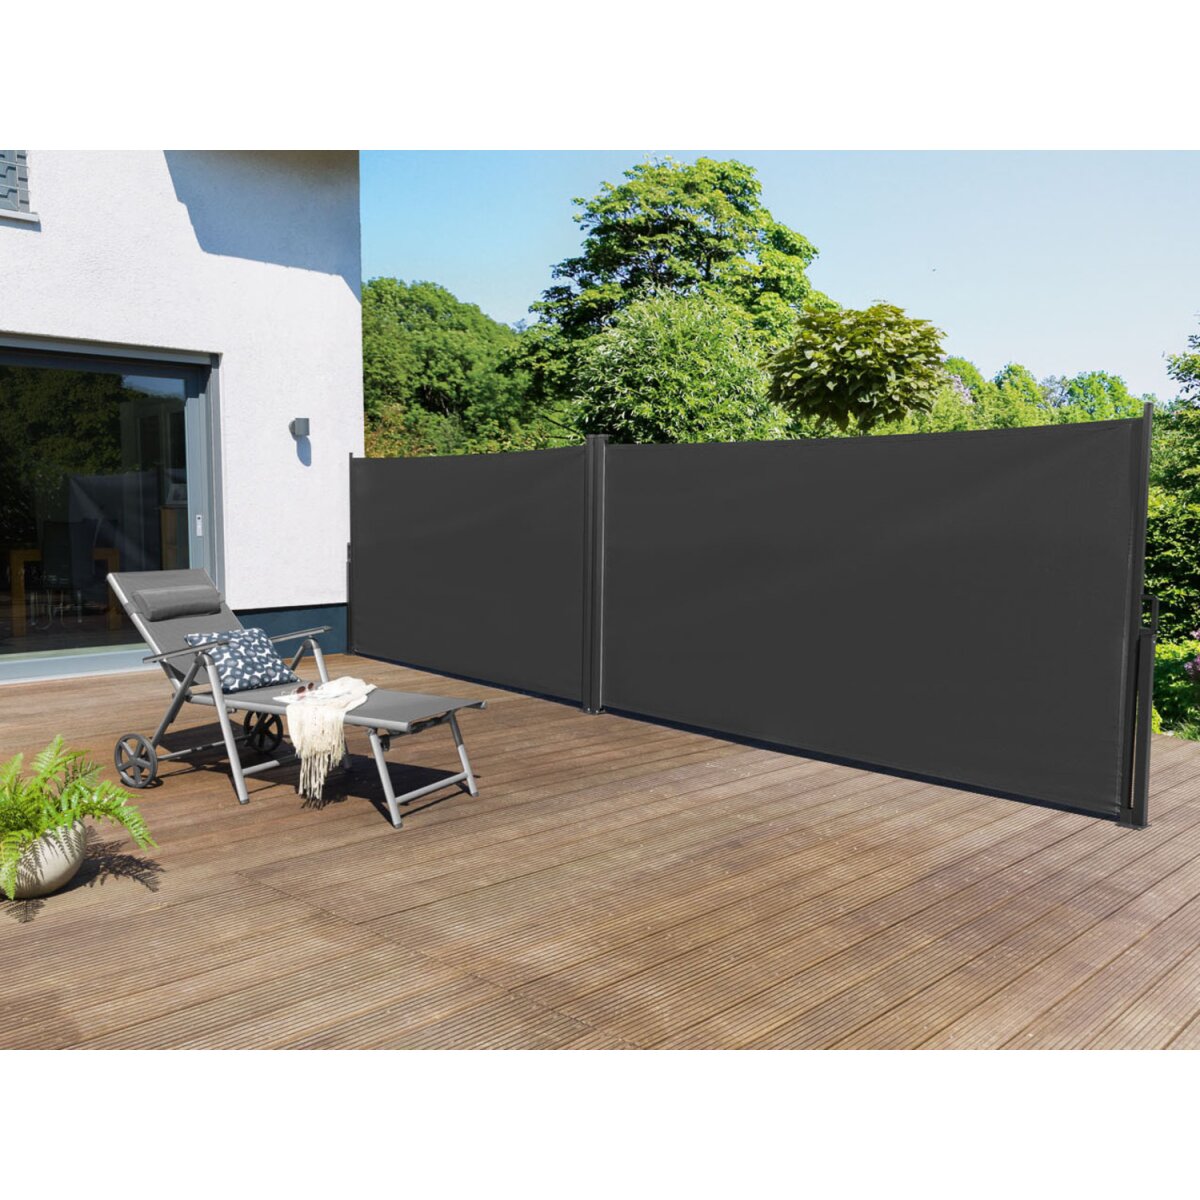 LIVARNO home Doppel Seitenmarkise, 160x600 cm, anthrazit - B-Ware sehr gut,  94,99 € | Markisen